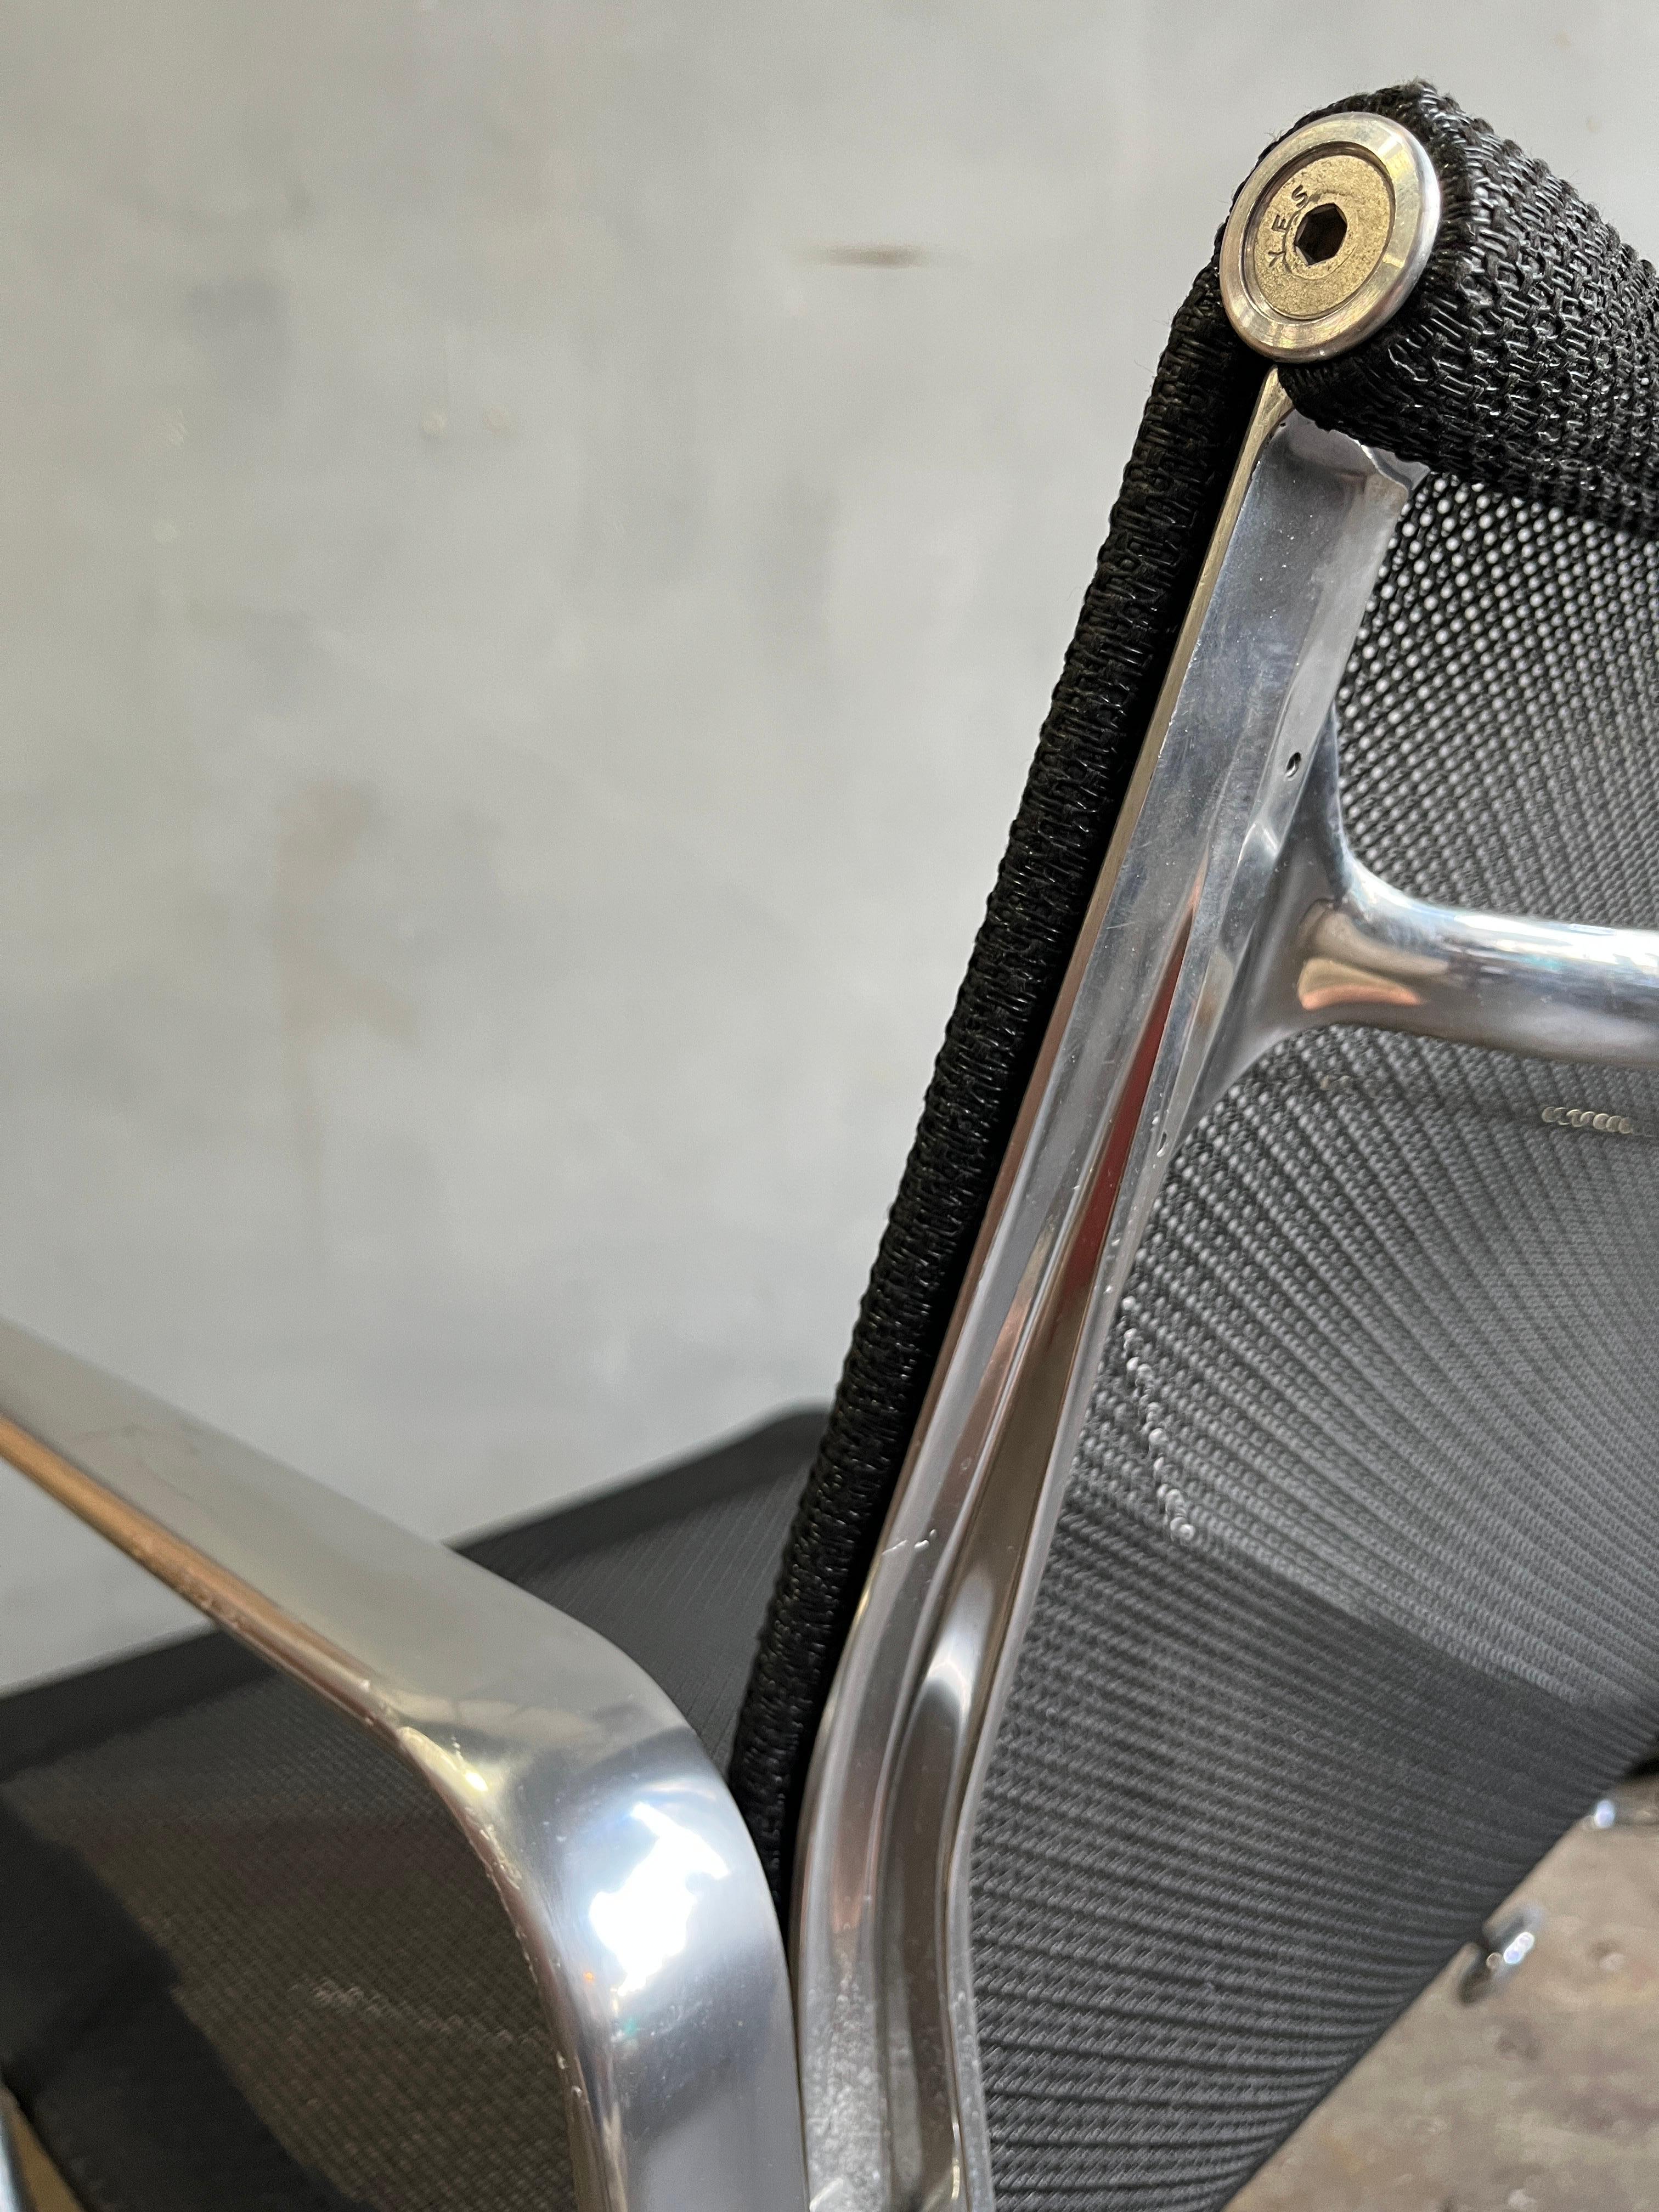 Nous vous proposons jusqu'à 5 chaises Aluminium Group Management en maille noire, conçues par Eames pour Herman Miller. Ces chaises sont les plus confortables de toutes les chaises Eames Group en aluminium et ont un aspect plus post-moderne.